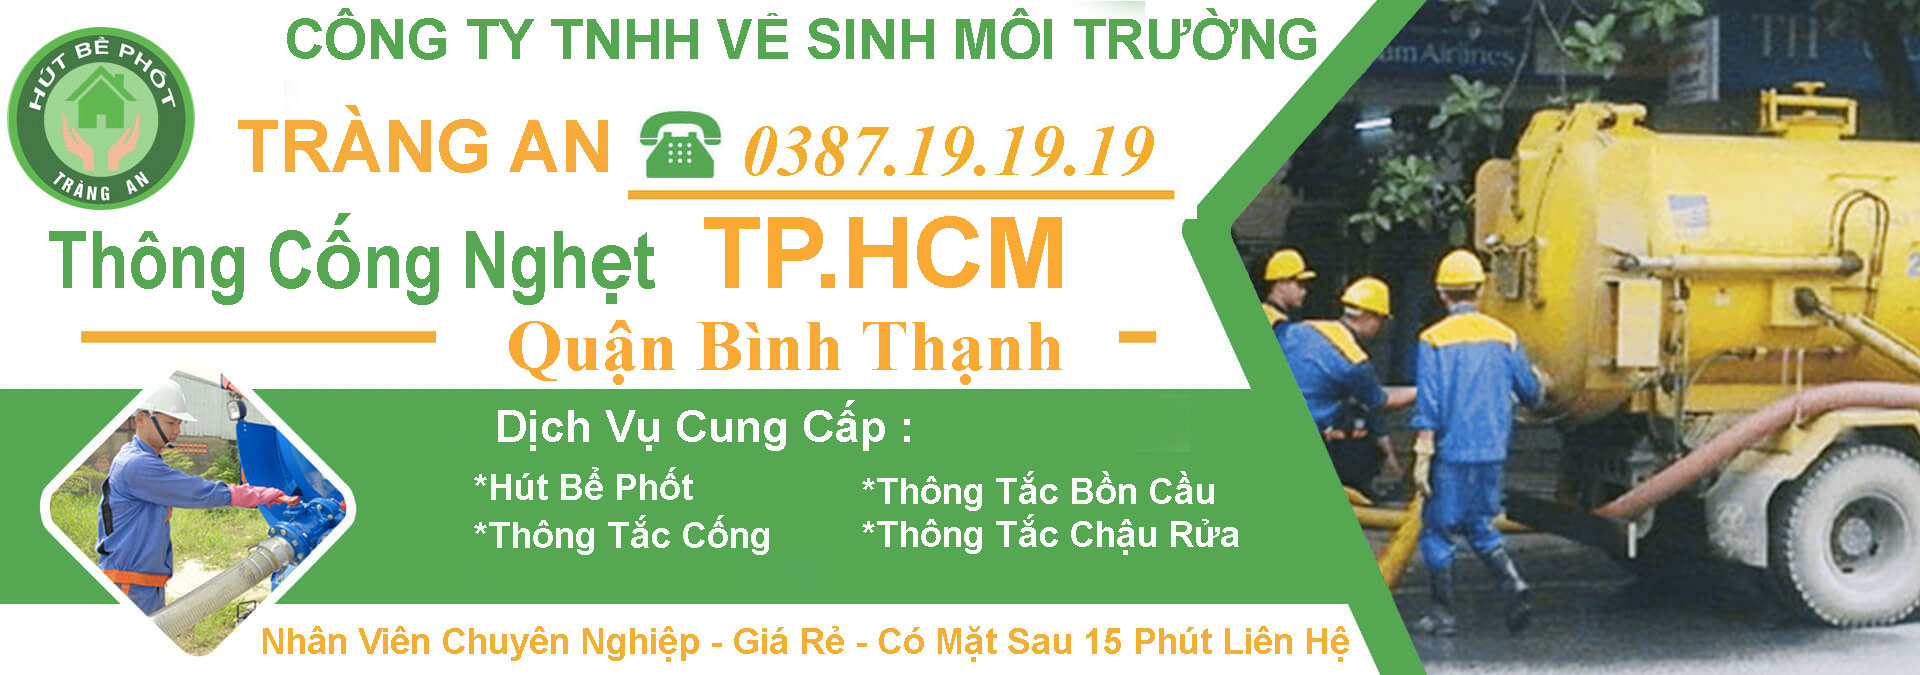 Thong Cong Nghet Quan Binh Thanh Tphcm